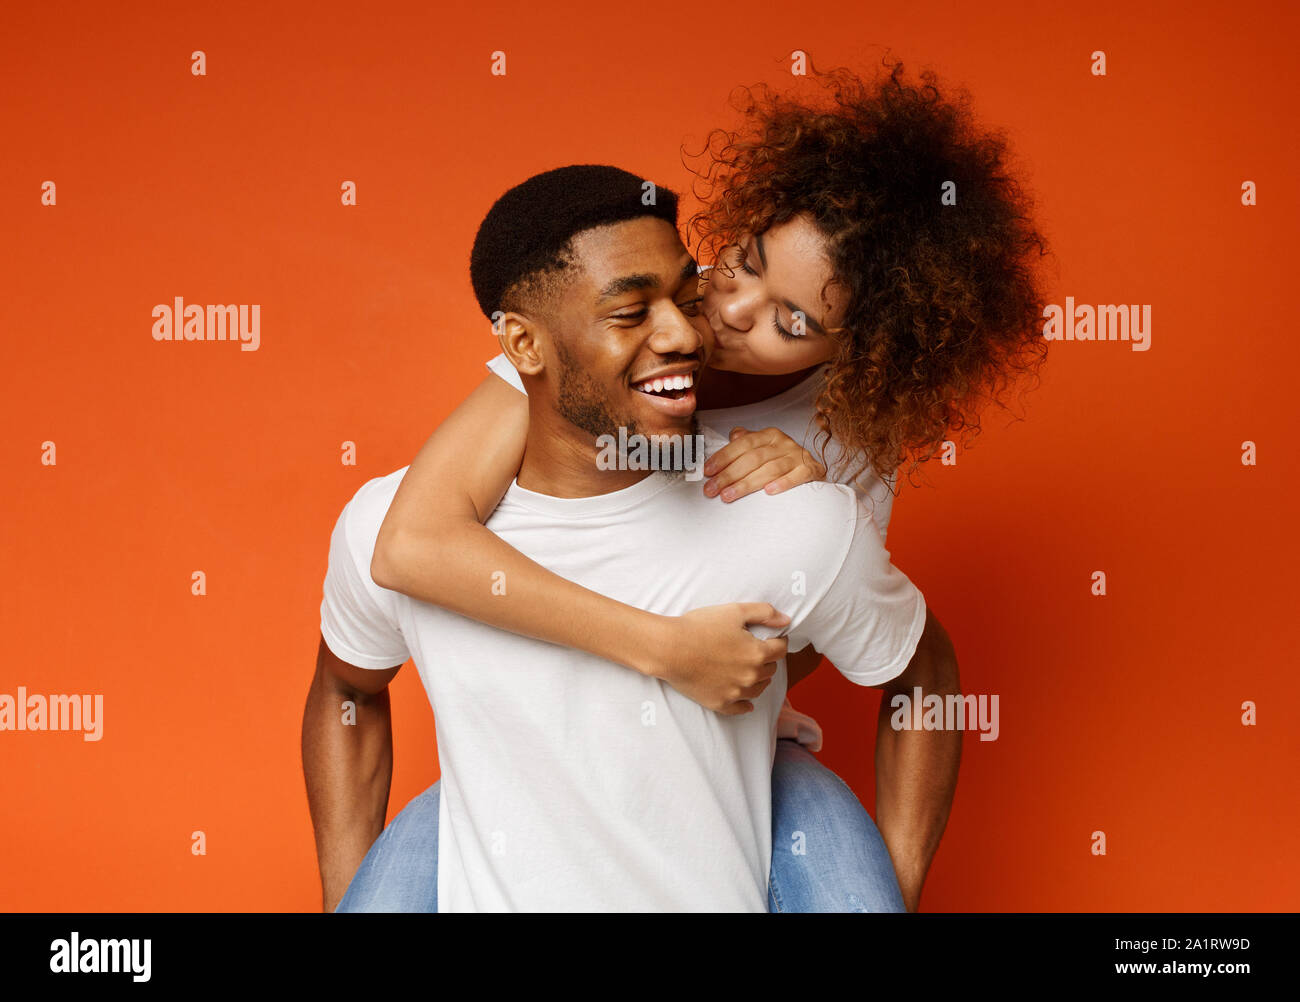 African American couple millénaire dupant ensemble, girl kissing her boyfriend Banque D'Images